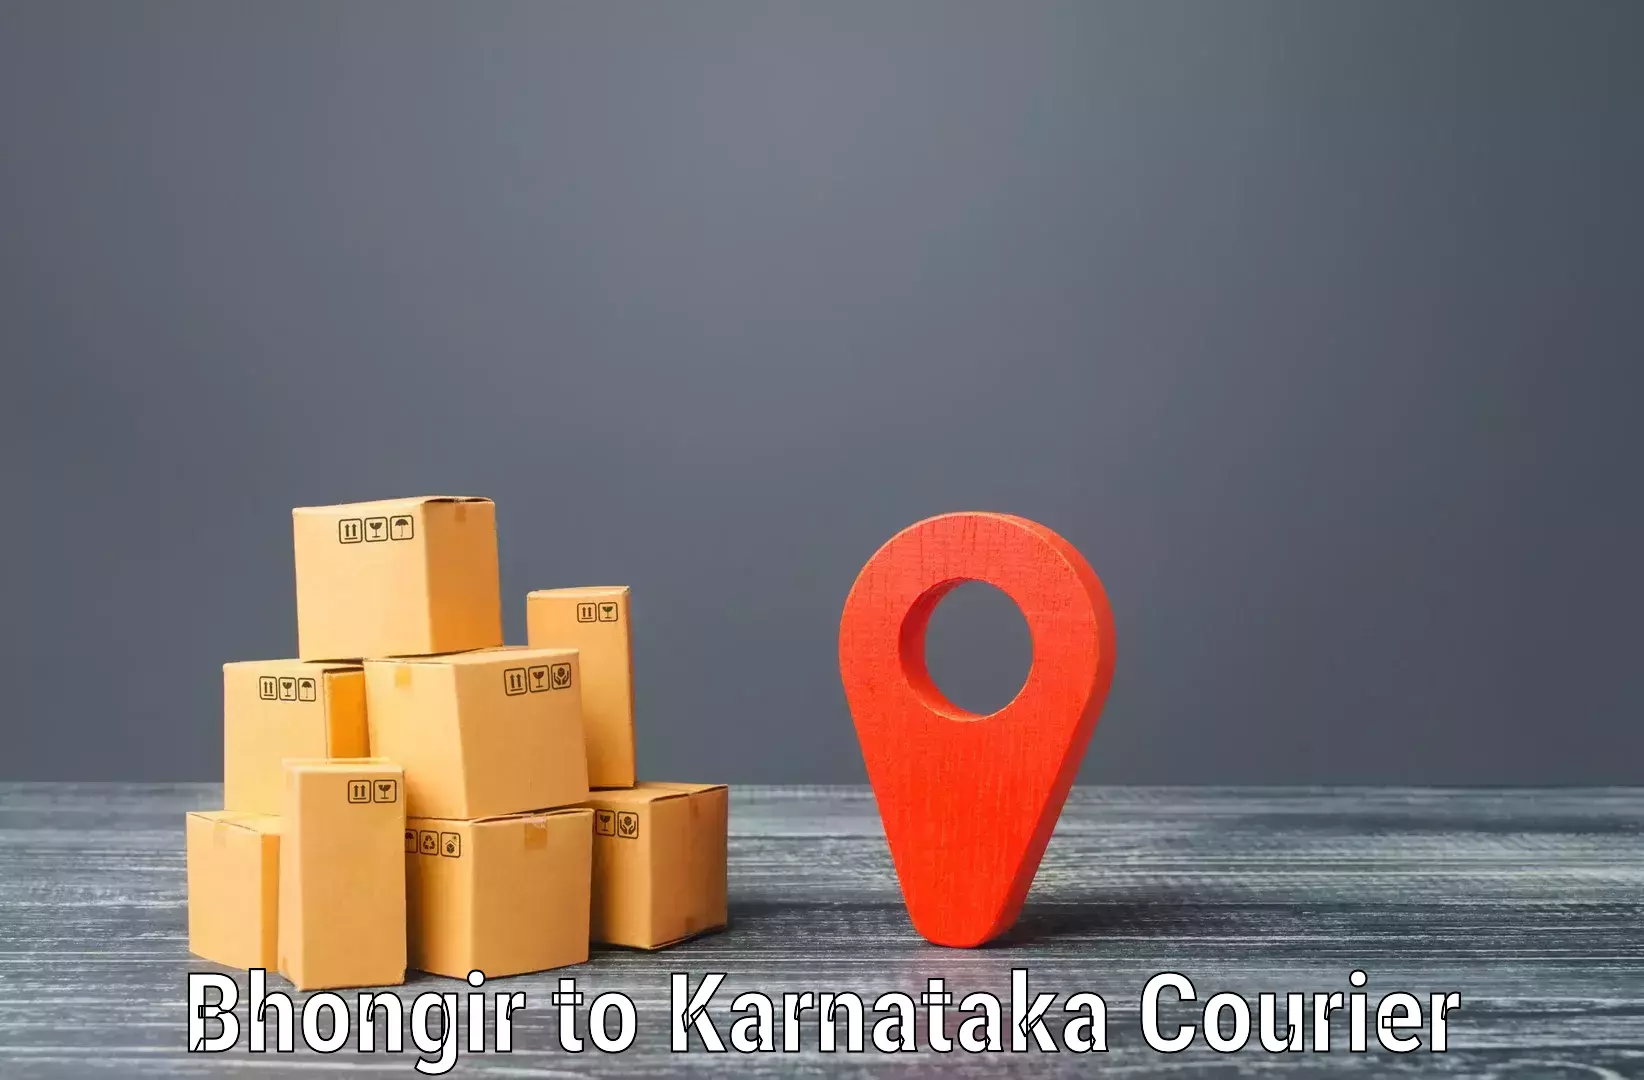 Premium courier solutions Bhongir to Gauribidanur